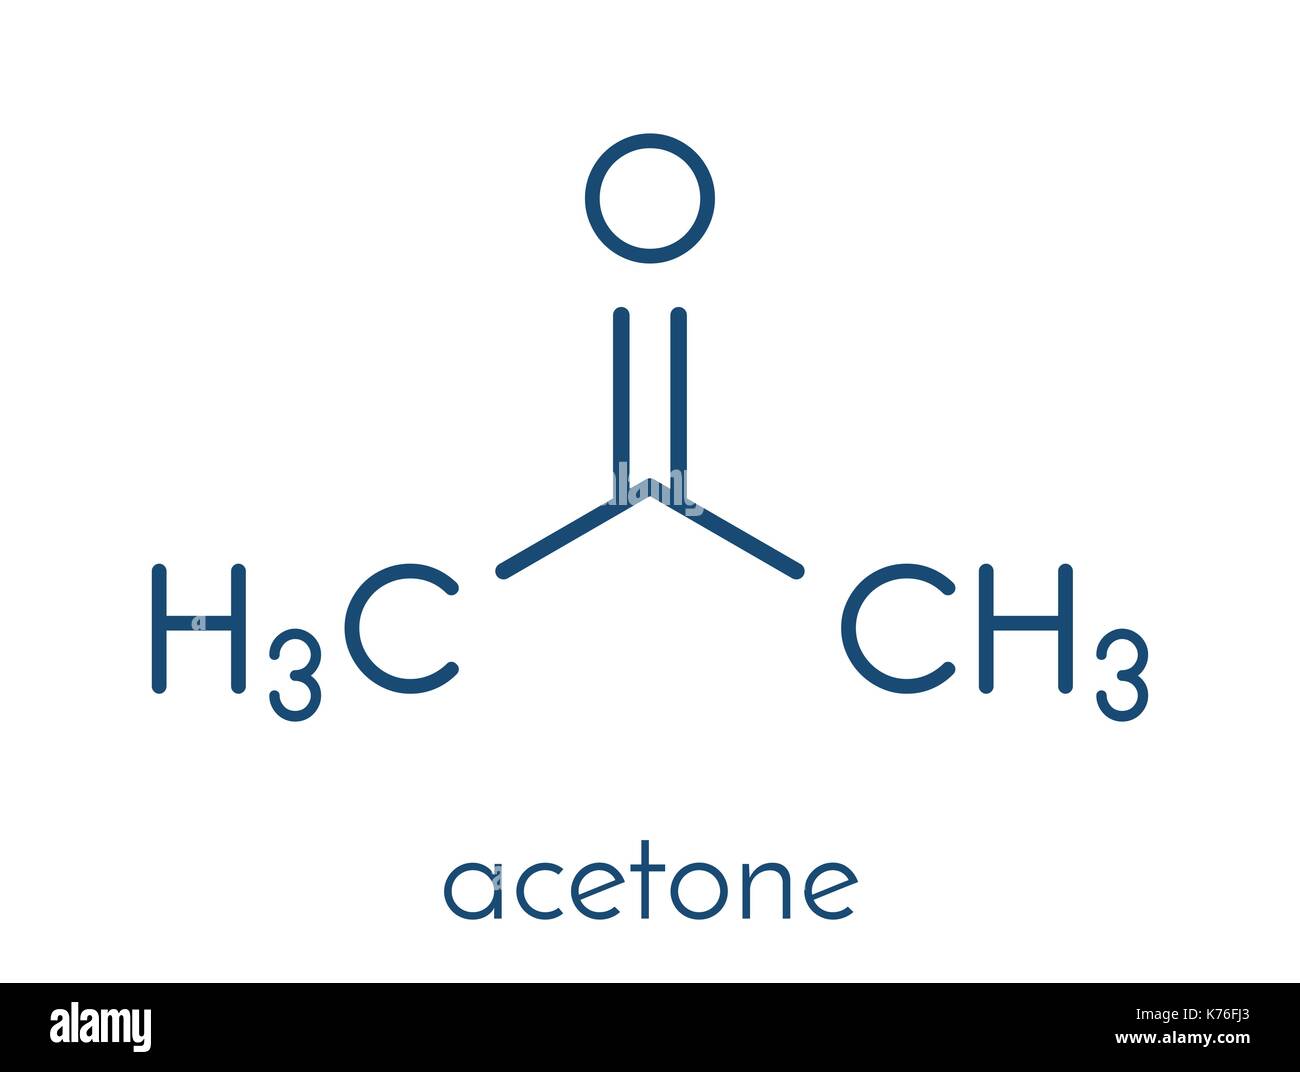 Ацетон удалить фон. Ацетон Скелетная формула. Ацетон молекула. Растворитель формула химическая. Ацетон молекулярная формула.